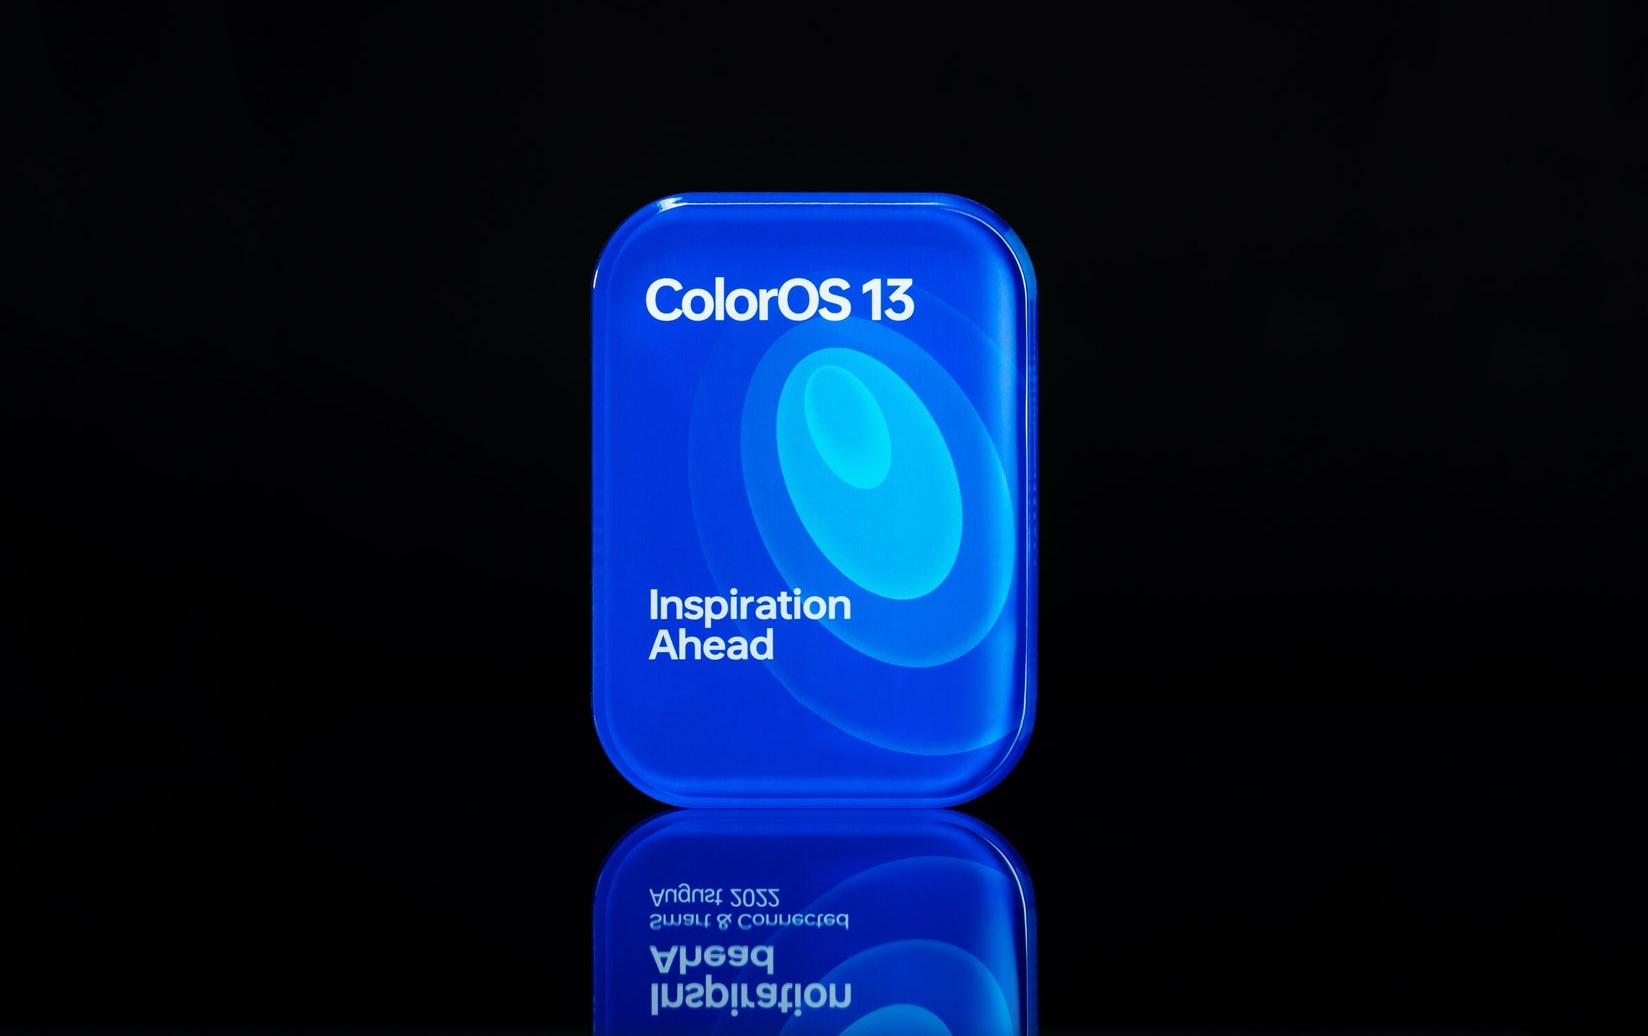 OPPO enthüllt ColorOS 13 Shell auf Basis von Android 13